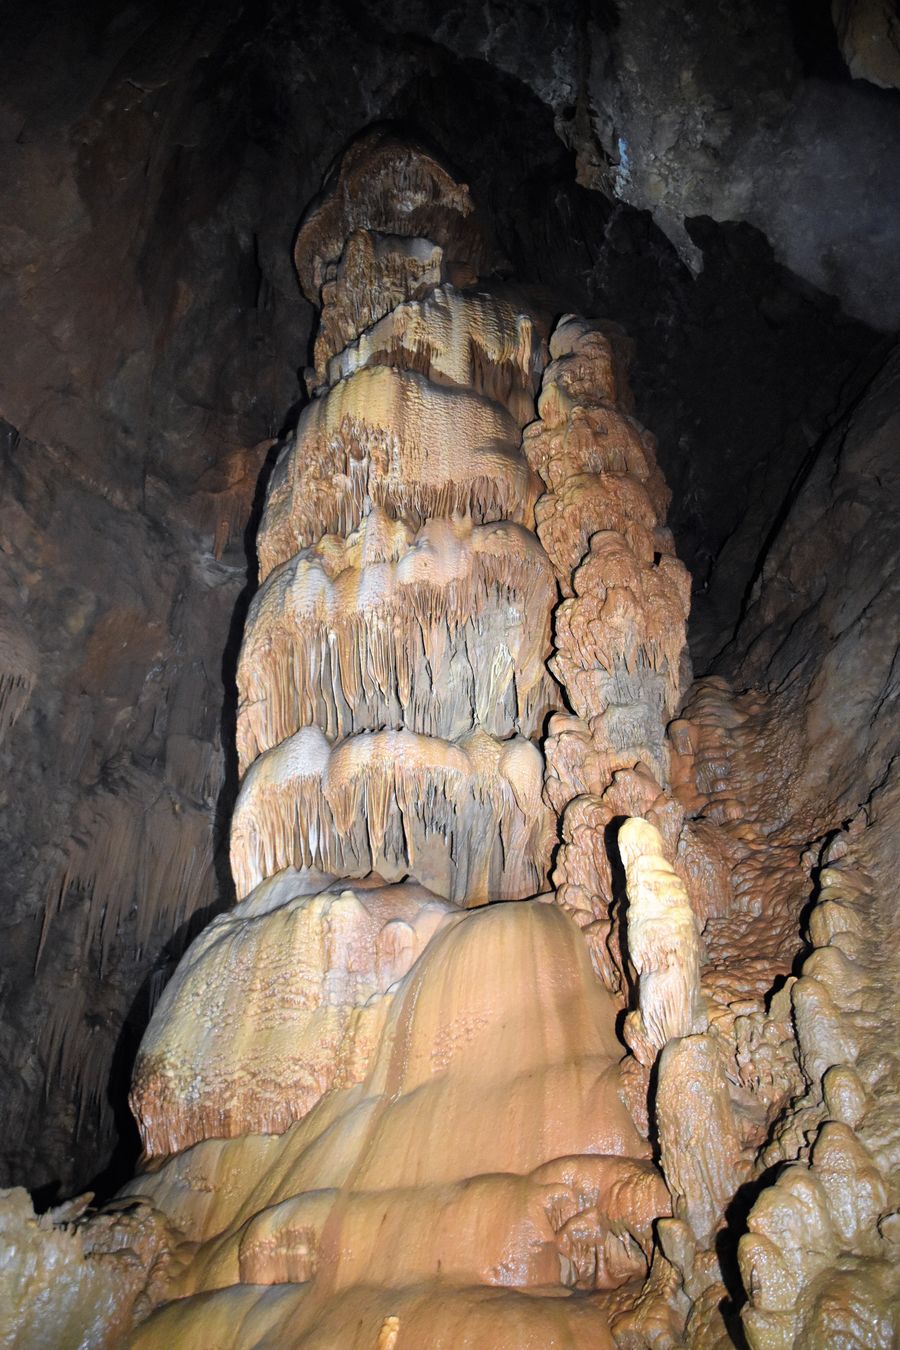 Dripstone of Roznava cavers Krasnohorska cave